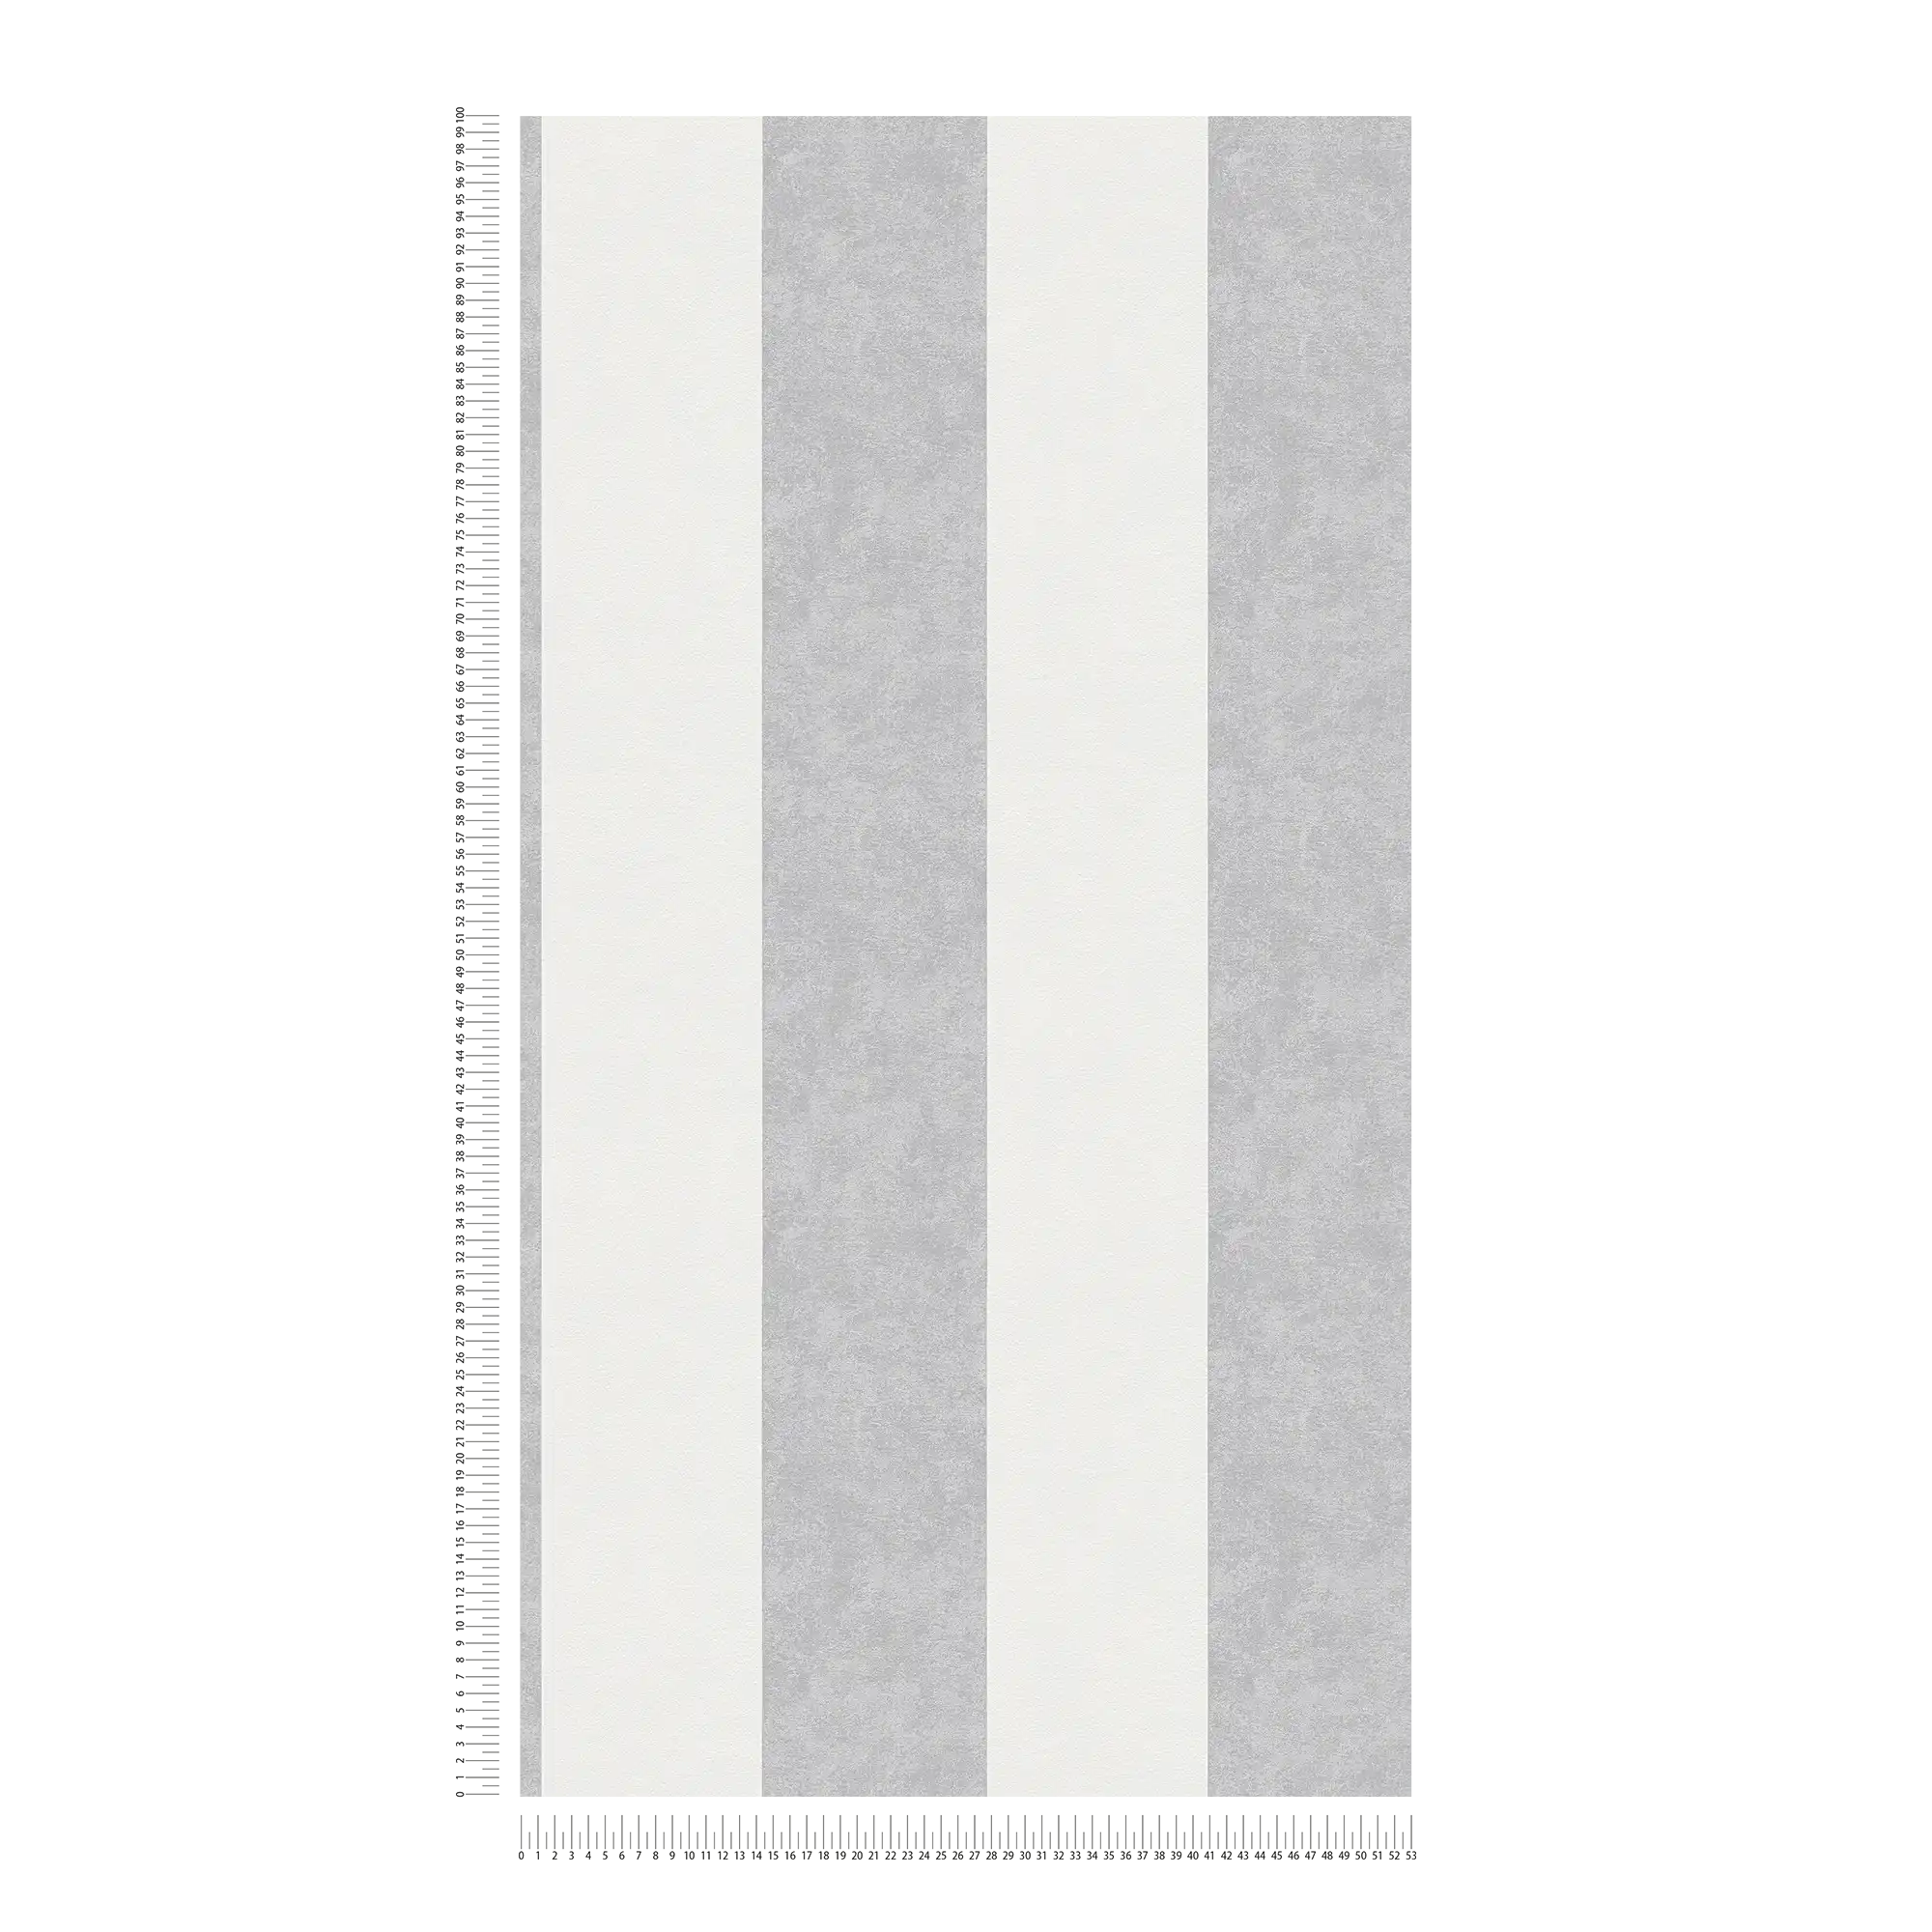             Gestreept behang met textuurpatroon - grijs
        